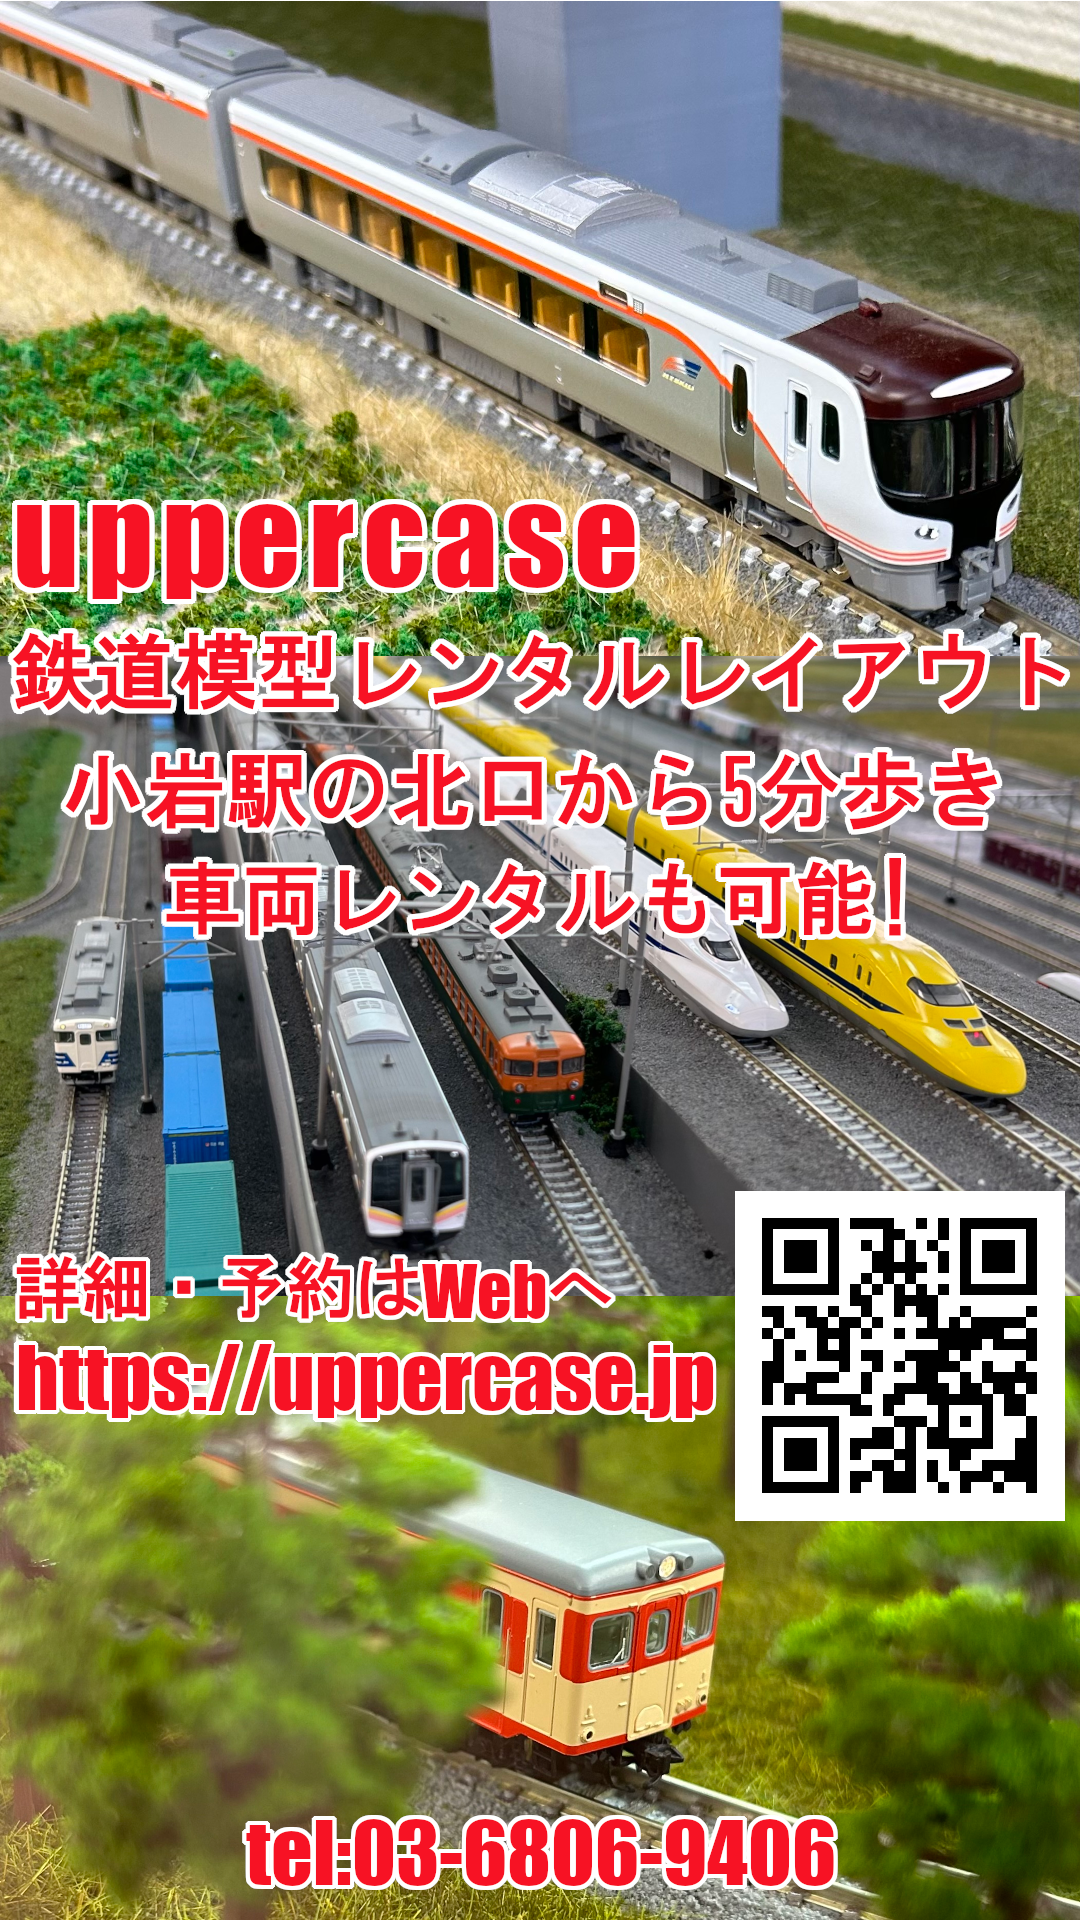 uppercase様05